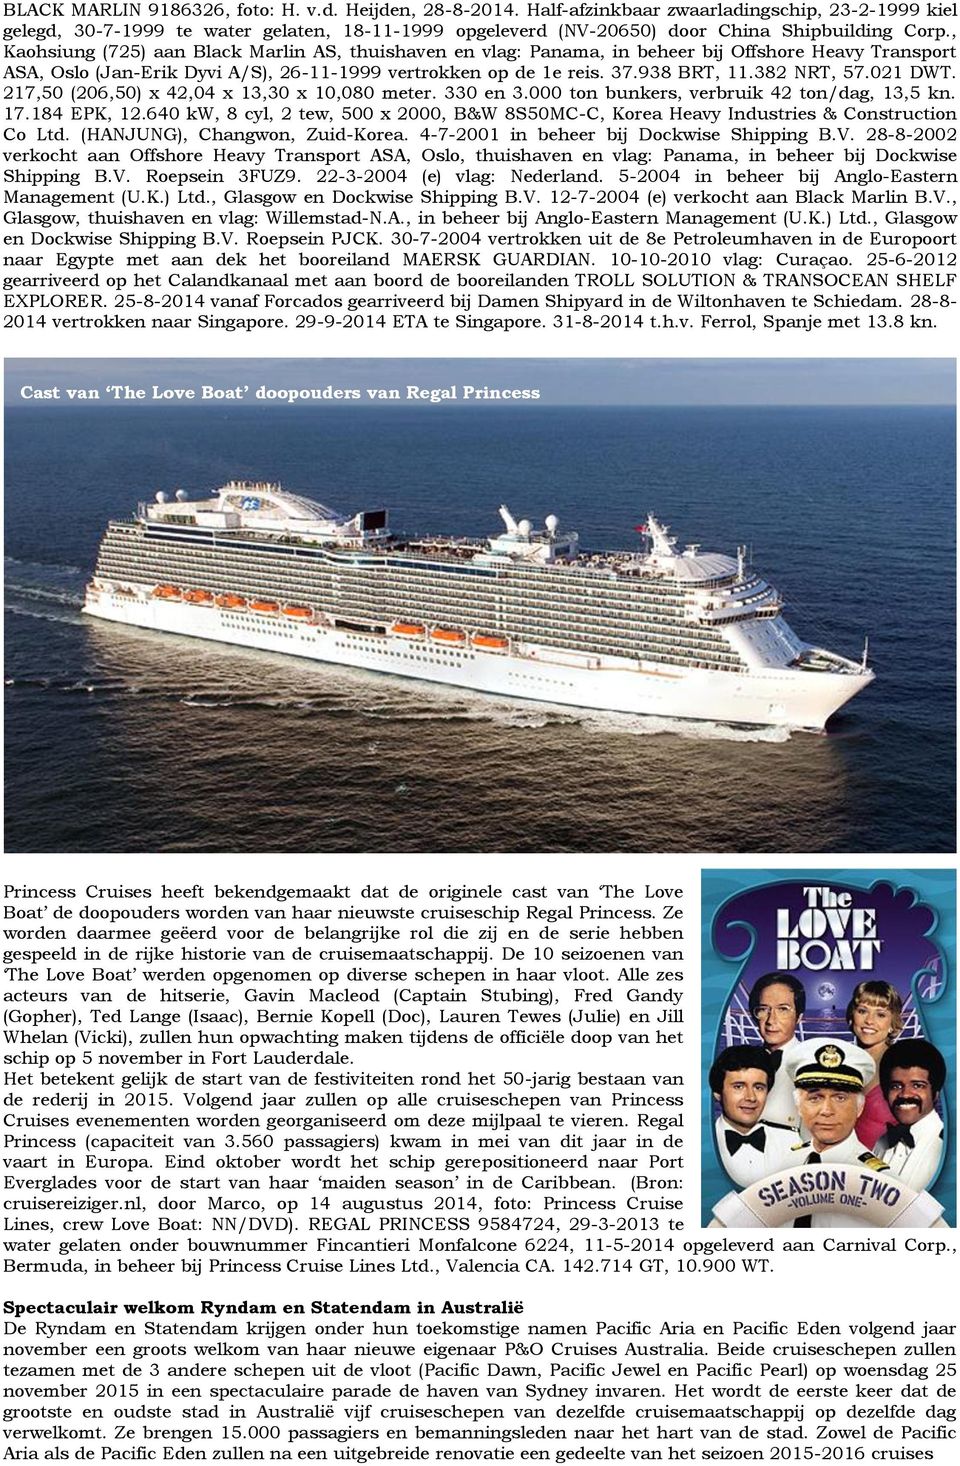 , Kaohsiung (725) aan Black Marlin AS, thuishaven en vlag: Panama, in beheer bij Offshore Heavy Transport ASA, Oslo (Jan-Erik Dyvi A/S), 26-11-1999 vertrokken op de 1e reis. 37.938 BRT, 11.